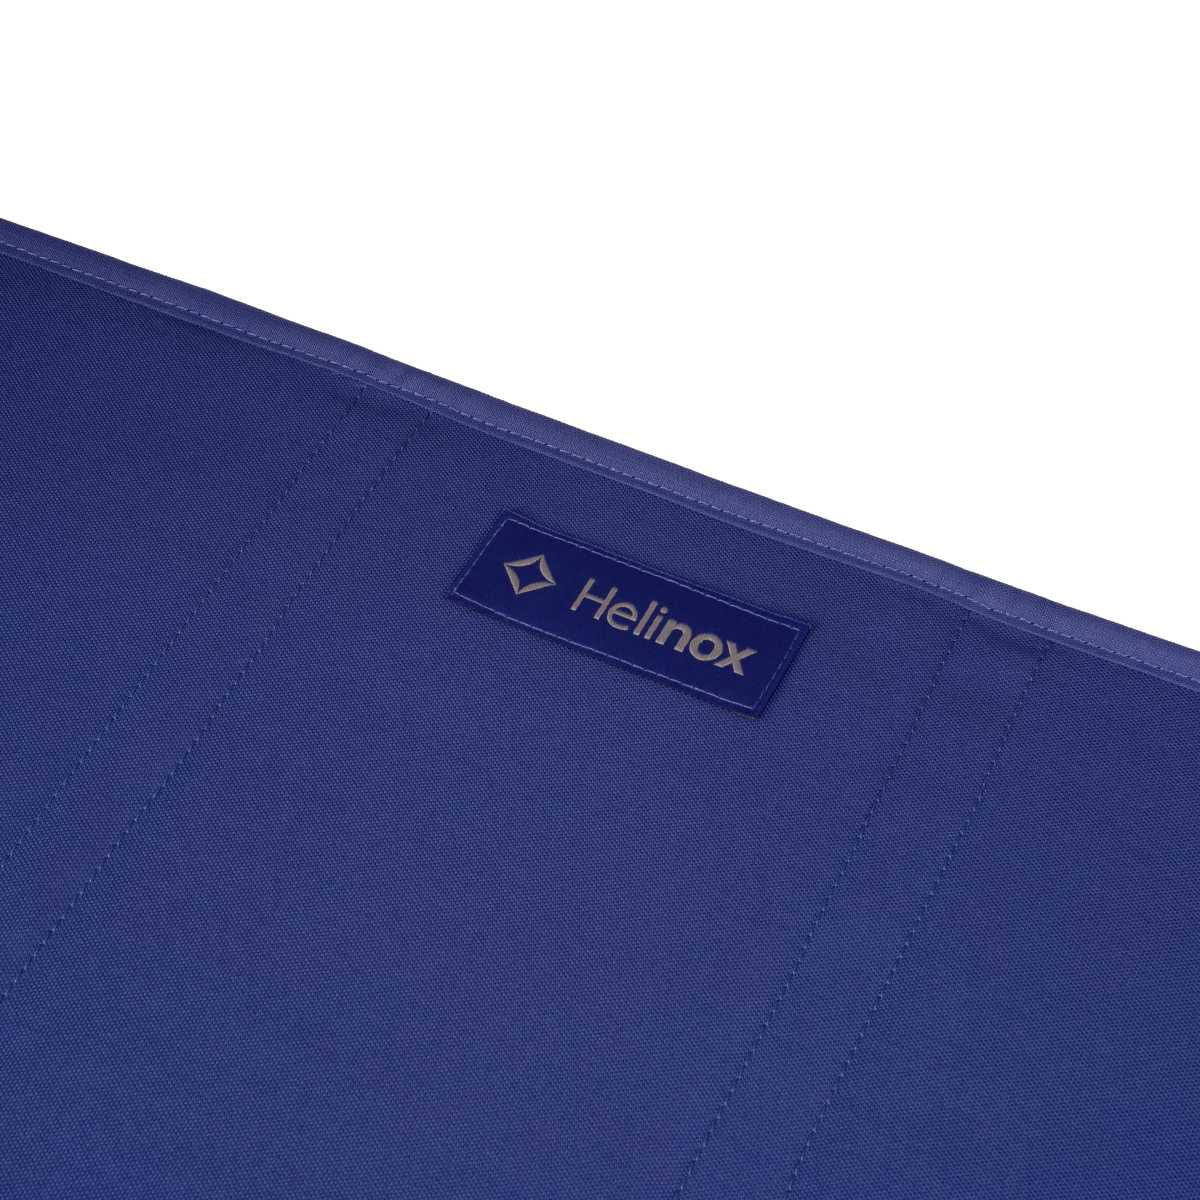 HELINOX Table One Hard Top Long Cobalt Campingtisch 10002809